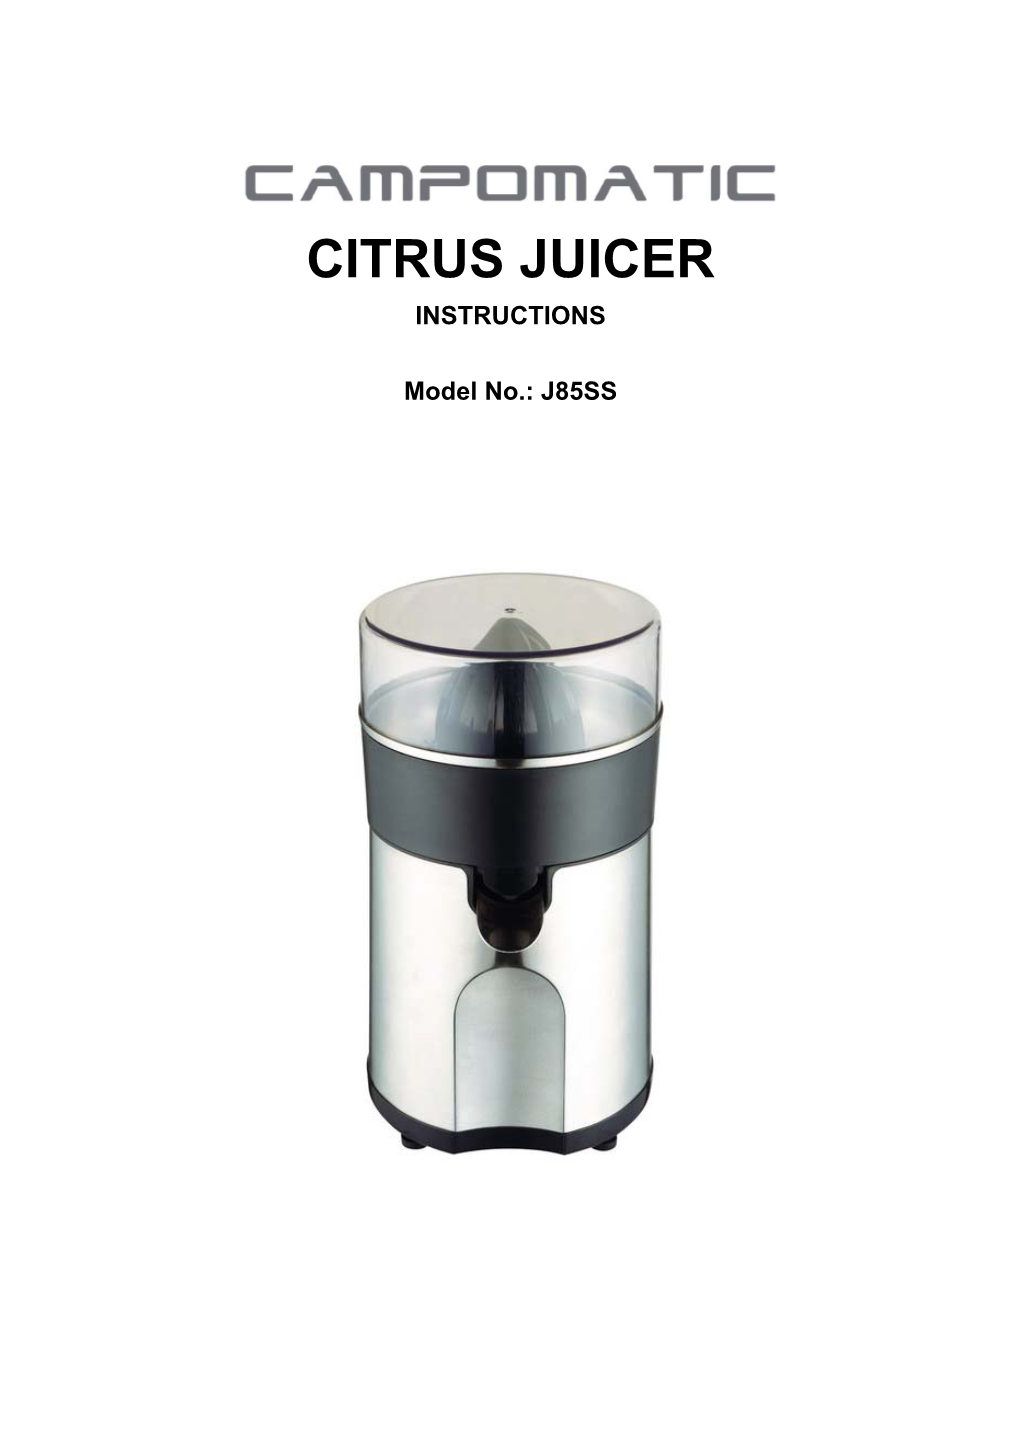 Citrus Juicer Instructions